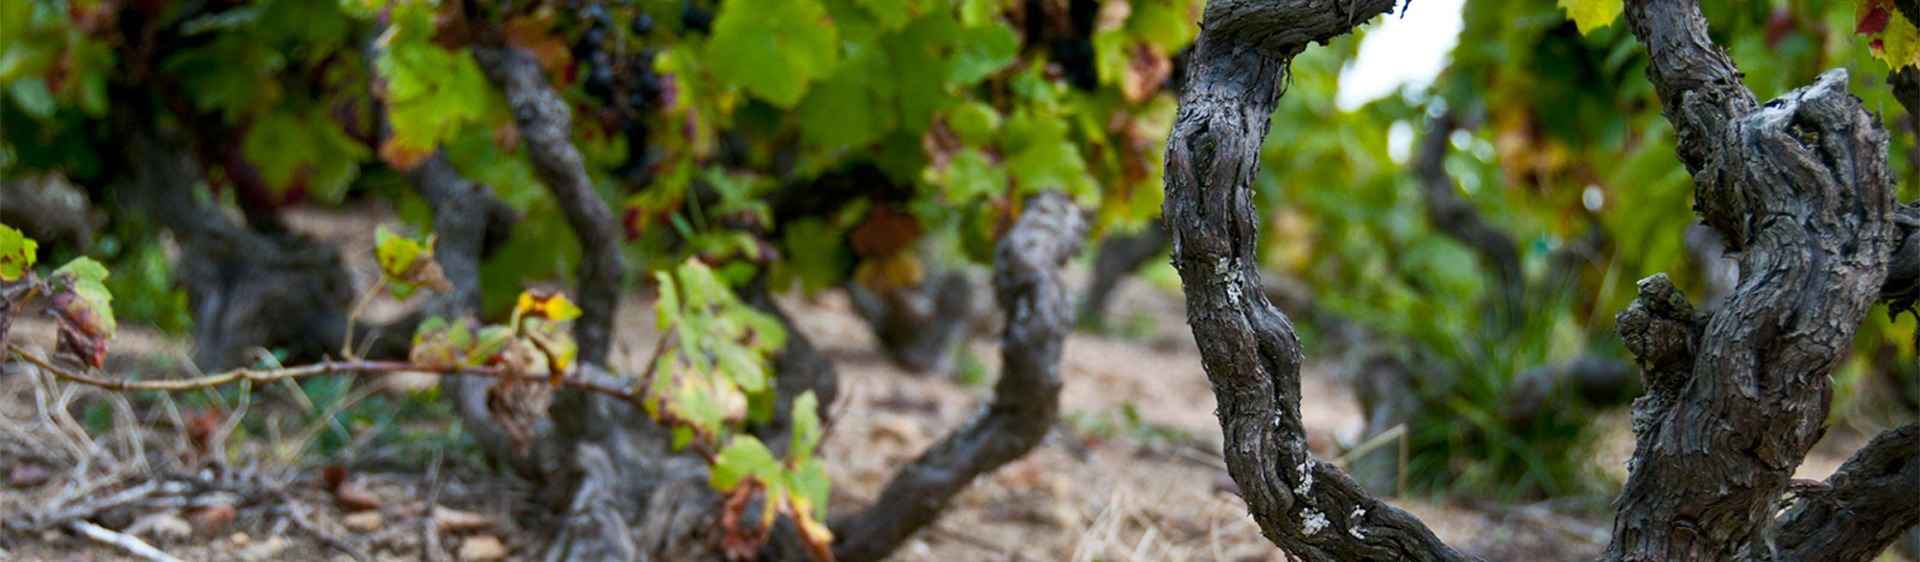 Le marché France des vins de l’appellation Mâcon-Vinzelles de Terroirs Originels